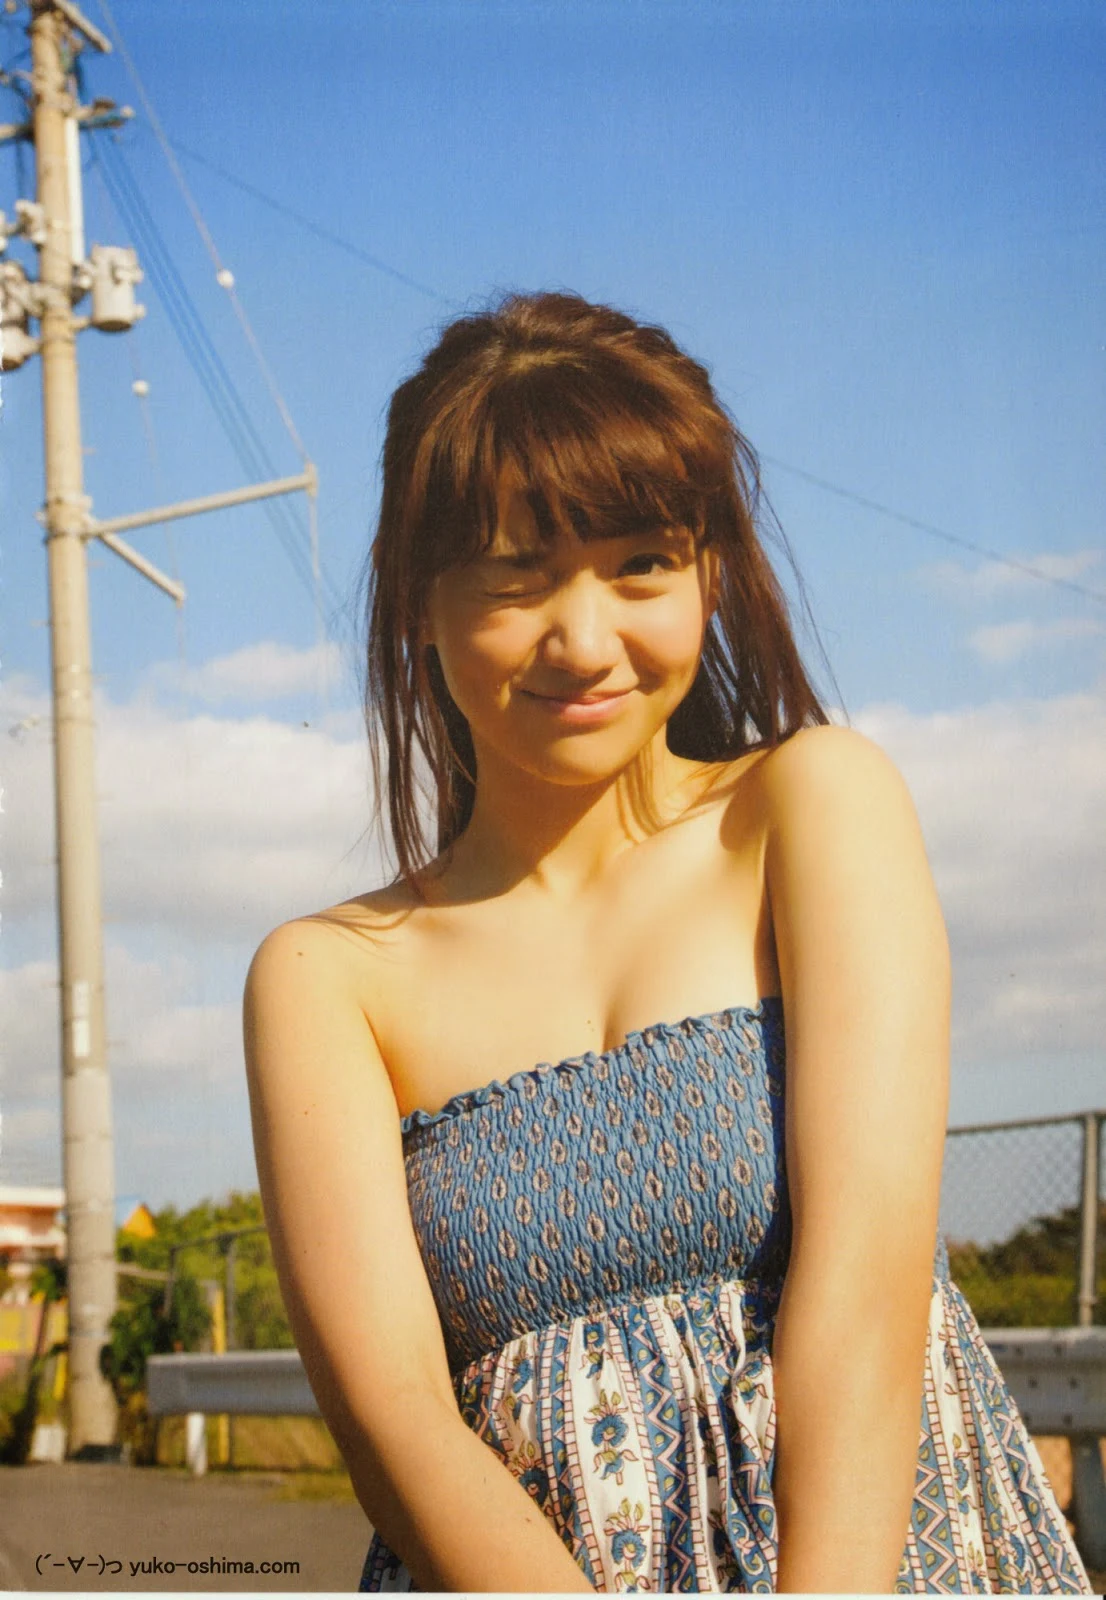 AKB48 Oshima Yuko Photo